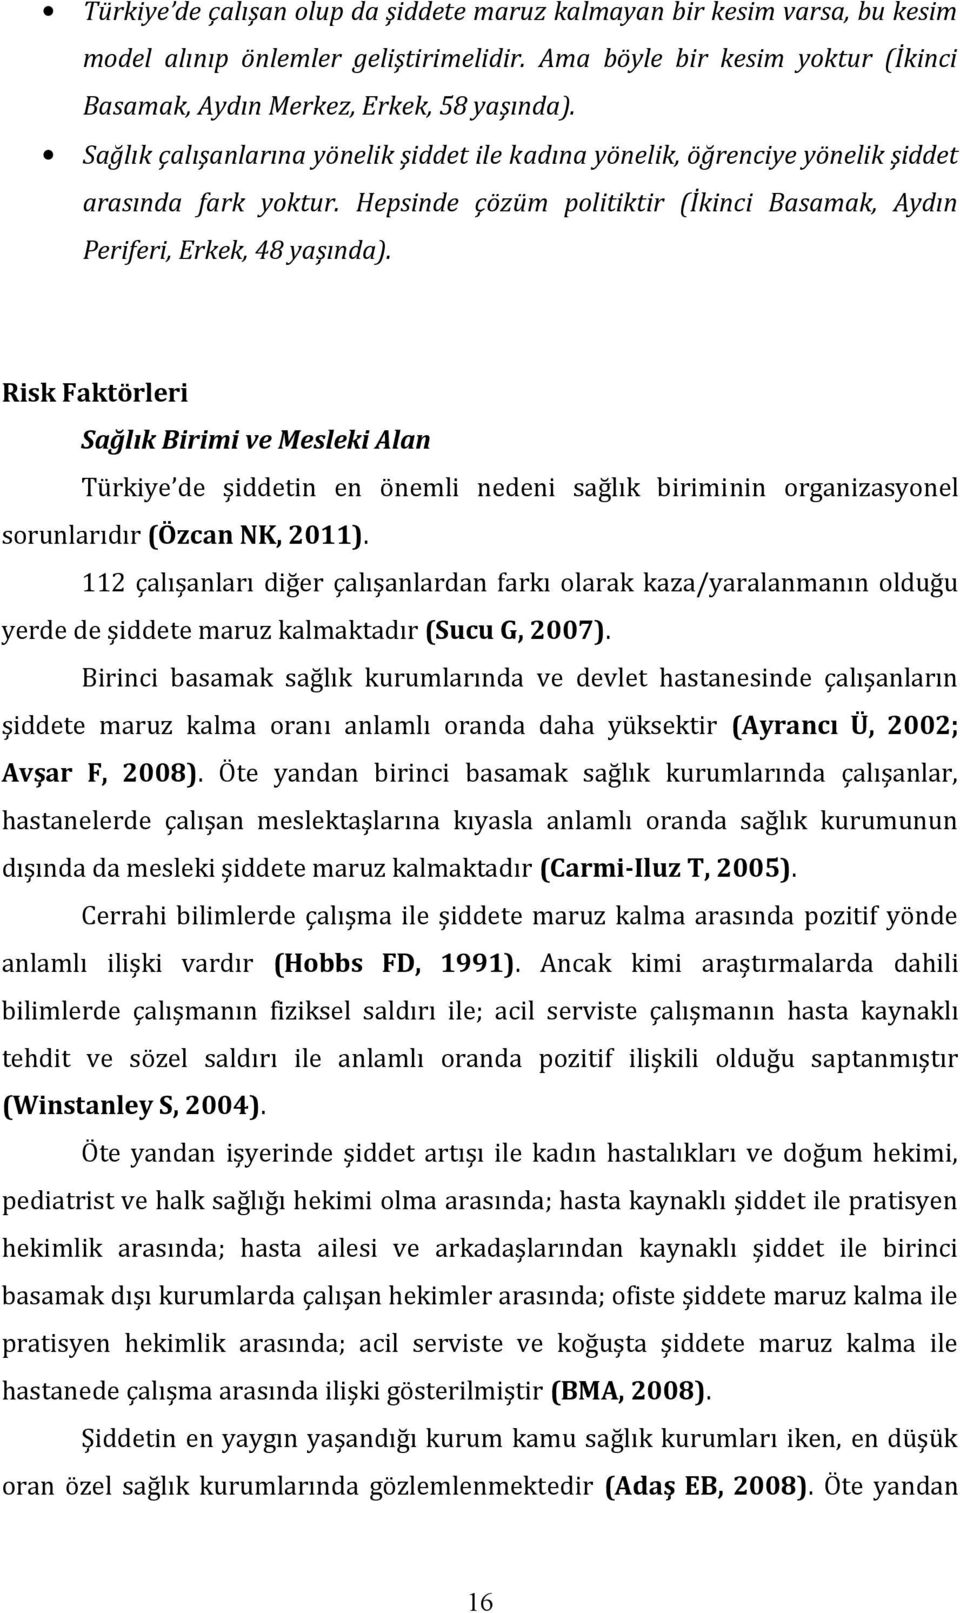 Risk Faktörleri Sağlık Birimi ve Mesleki Alan Türkiye de şiddetin en önemli nedeni sağlık biriminin organizasyonel sorunlarıdır (Özcan NK, 2011).